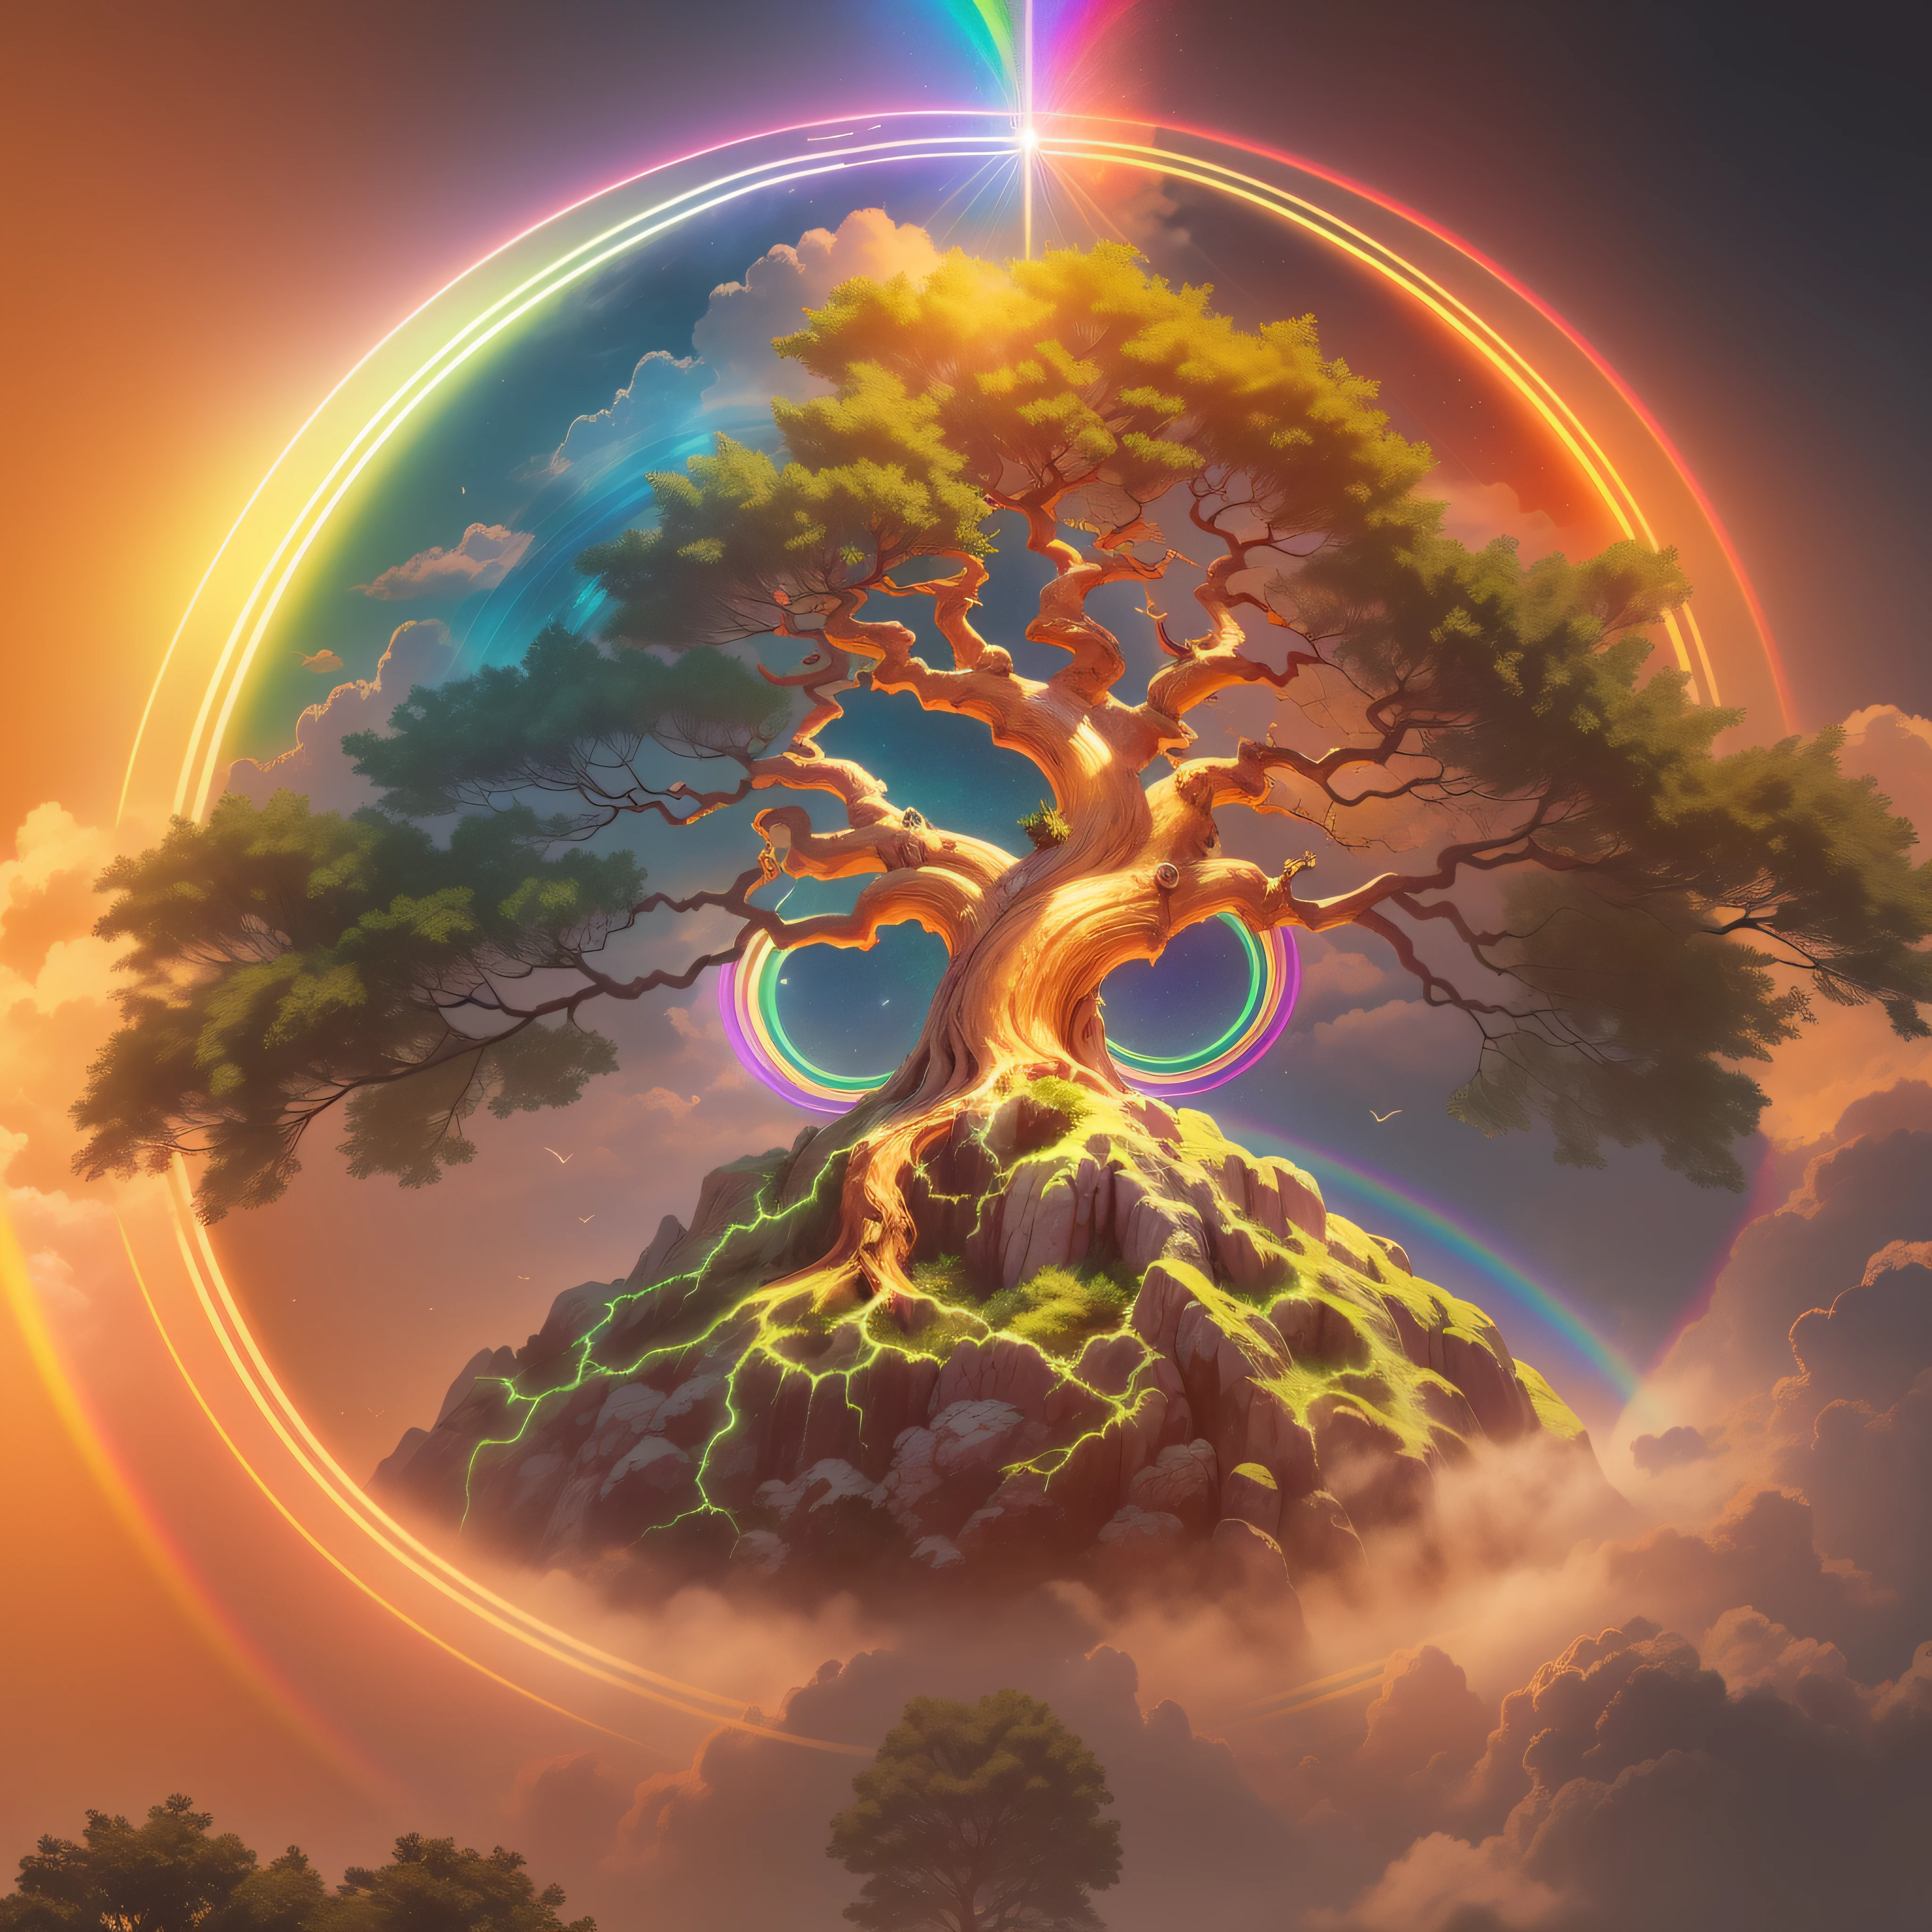 Árbol Bodhi, símbolo del budismo, iridiscente en colores del arco iris, con un aura dorada a su alrededor con una luz divina muy brillante descendiendo del cielo,  Imagen de alta definición, Alto detalle y estilo fotorrealista. Imagen con al menos 300 ppp, Ultra HD 8K